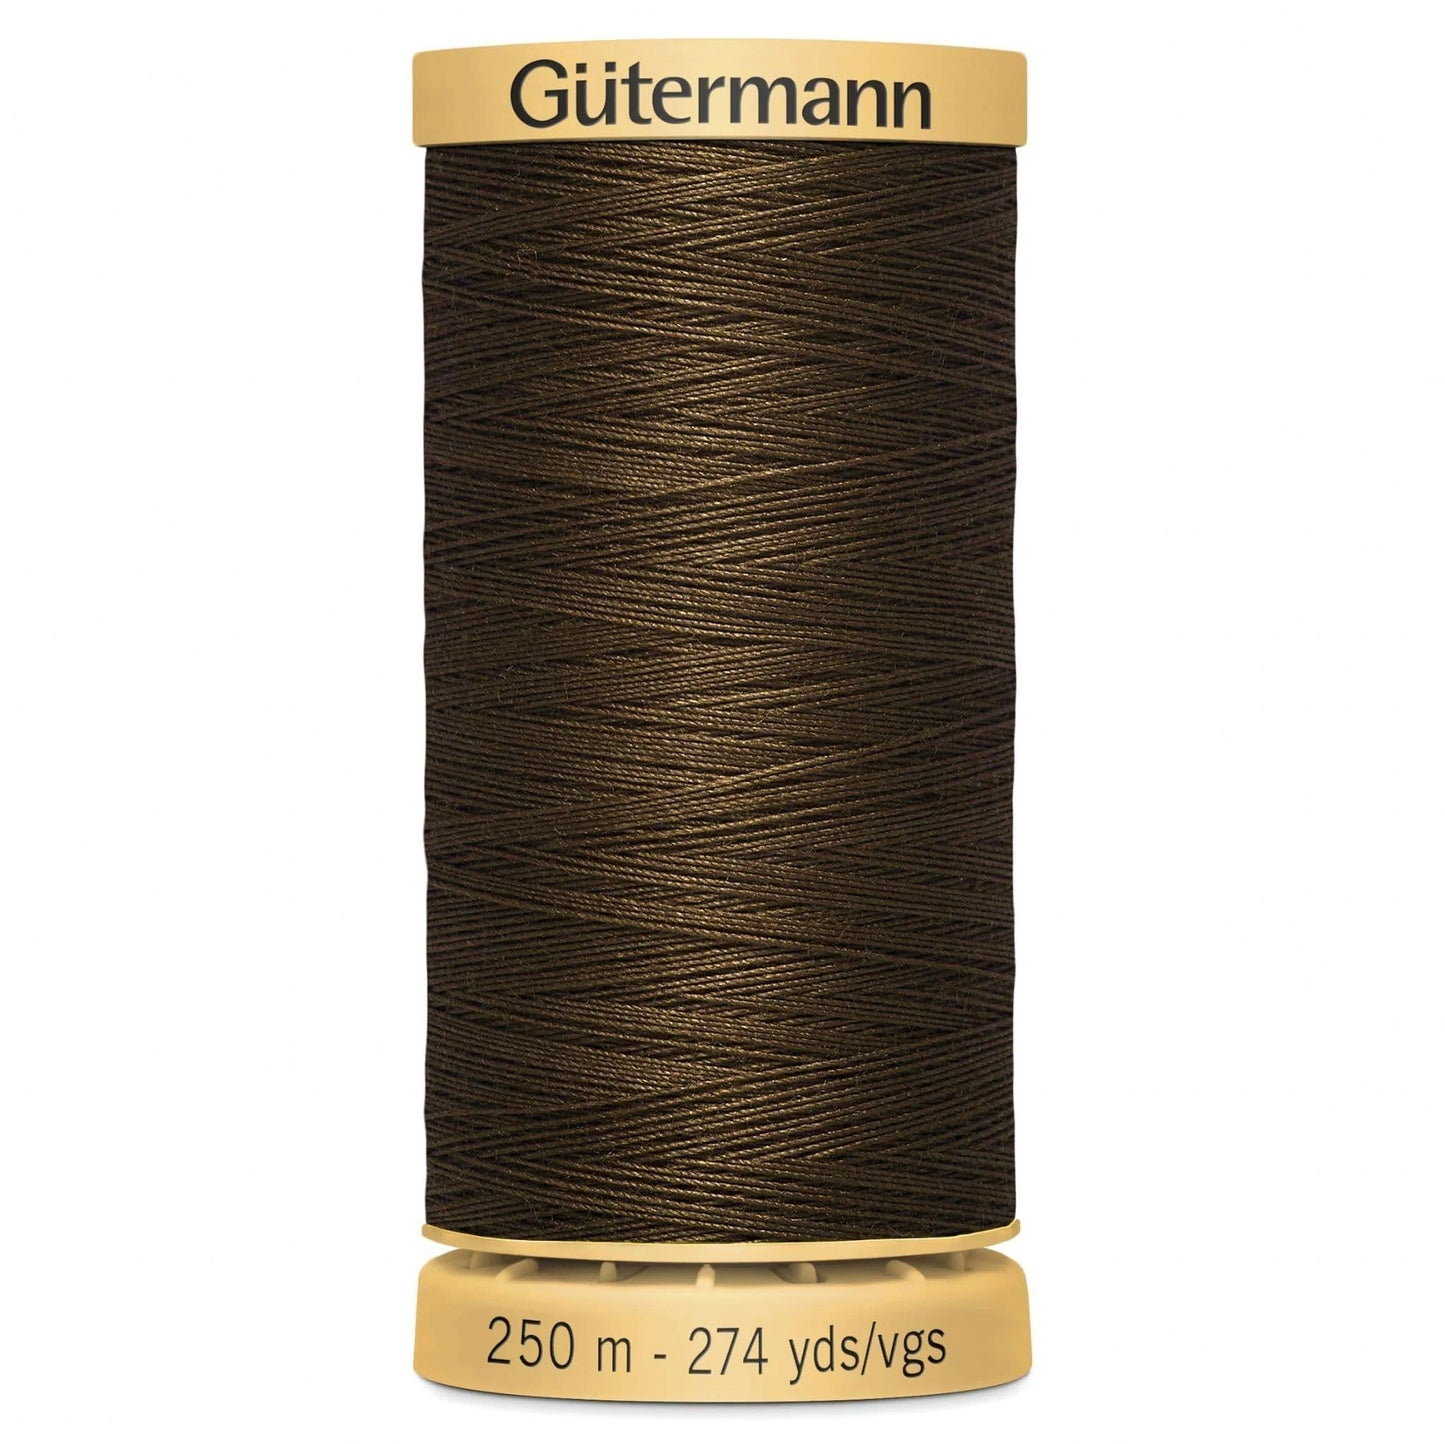 2960 Gutermann Natural Cotton Thread 250m - Dark Brown